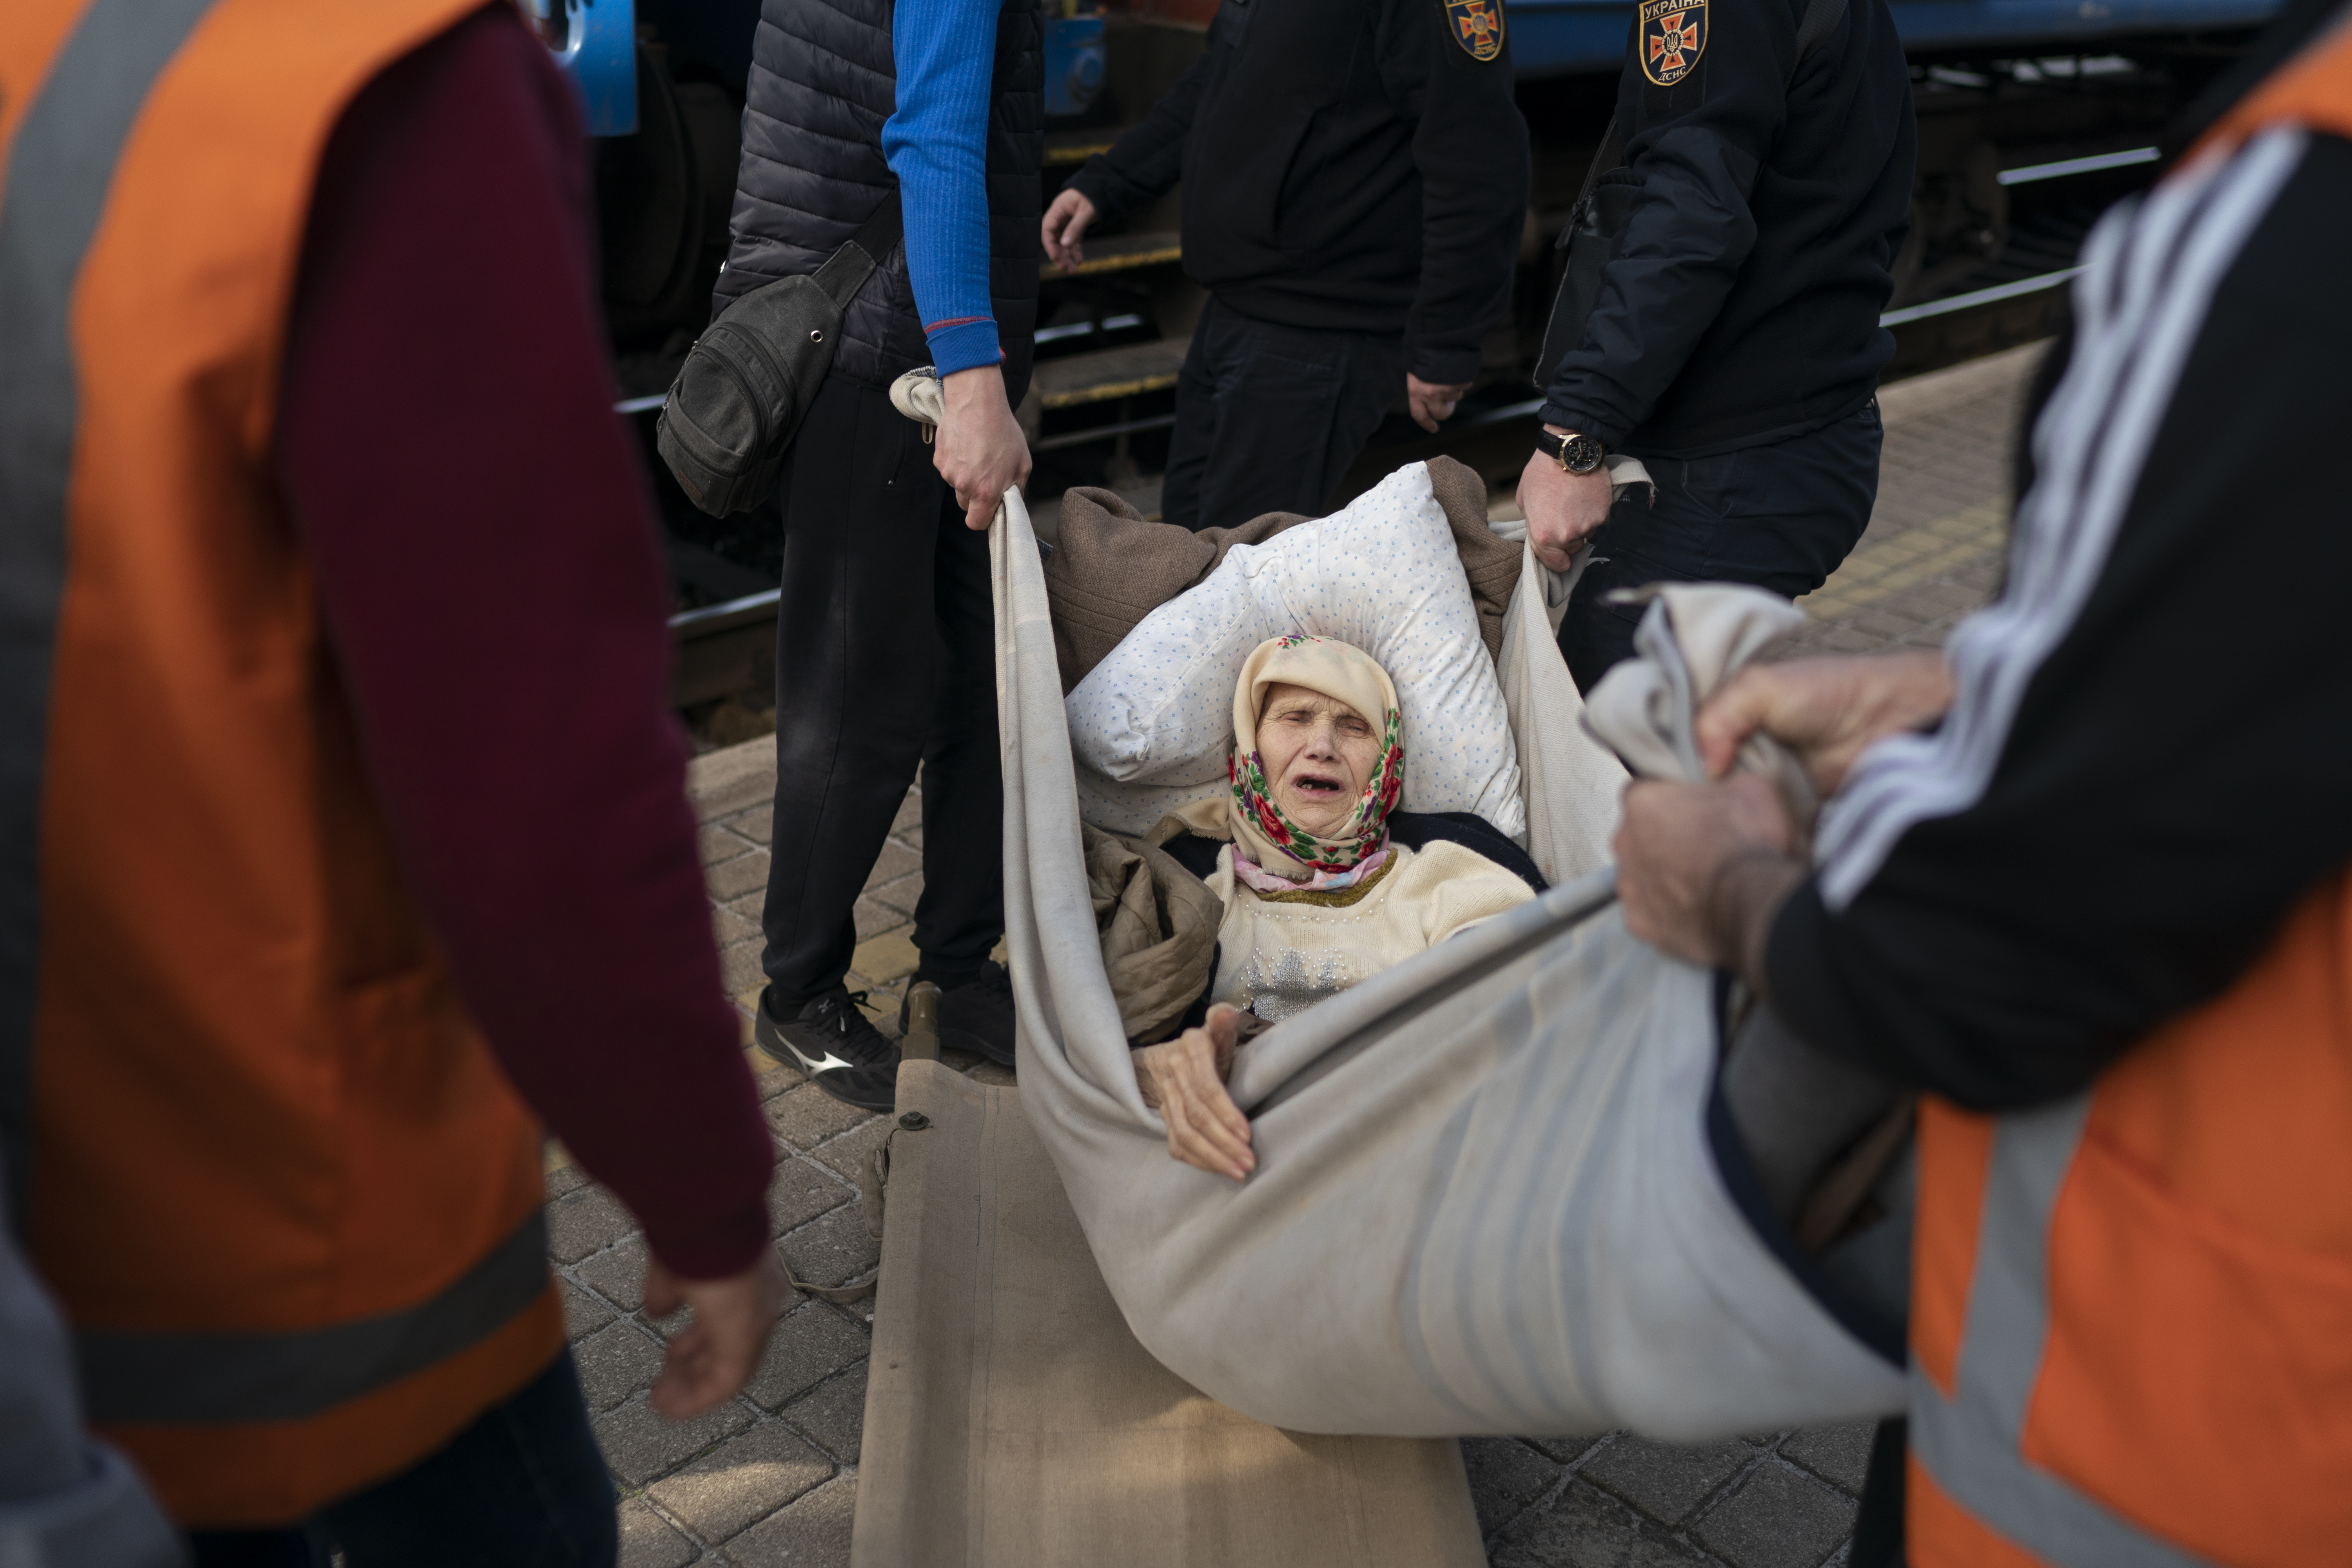 Una mujer, de 91 años, es transportada en una camilla improvisada mientras aborda un tren, huyendo de la guerra en Severodonetsk en una estación de tren en Pokrovsk, Ucrania (Foto AP/Leo Correa)